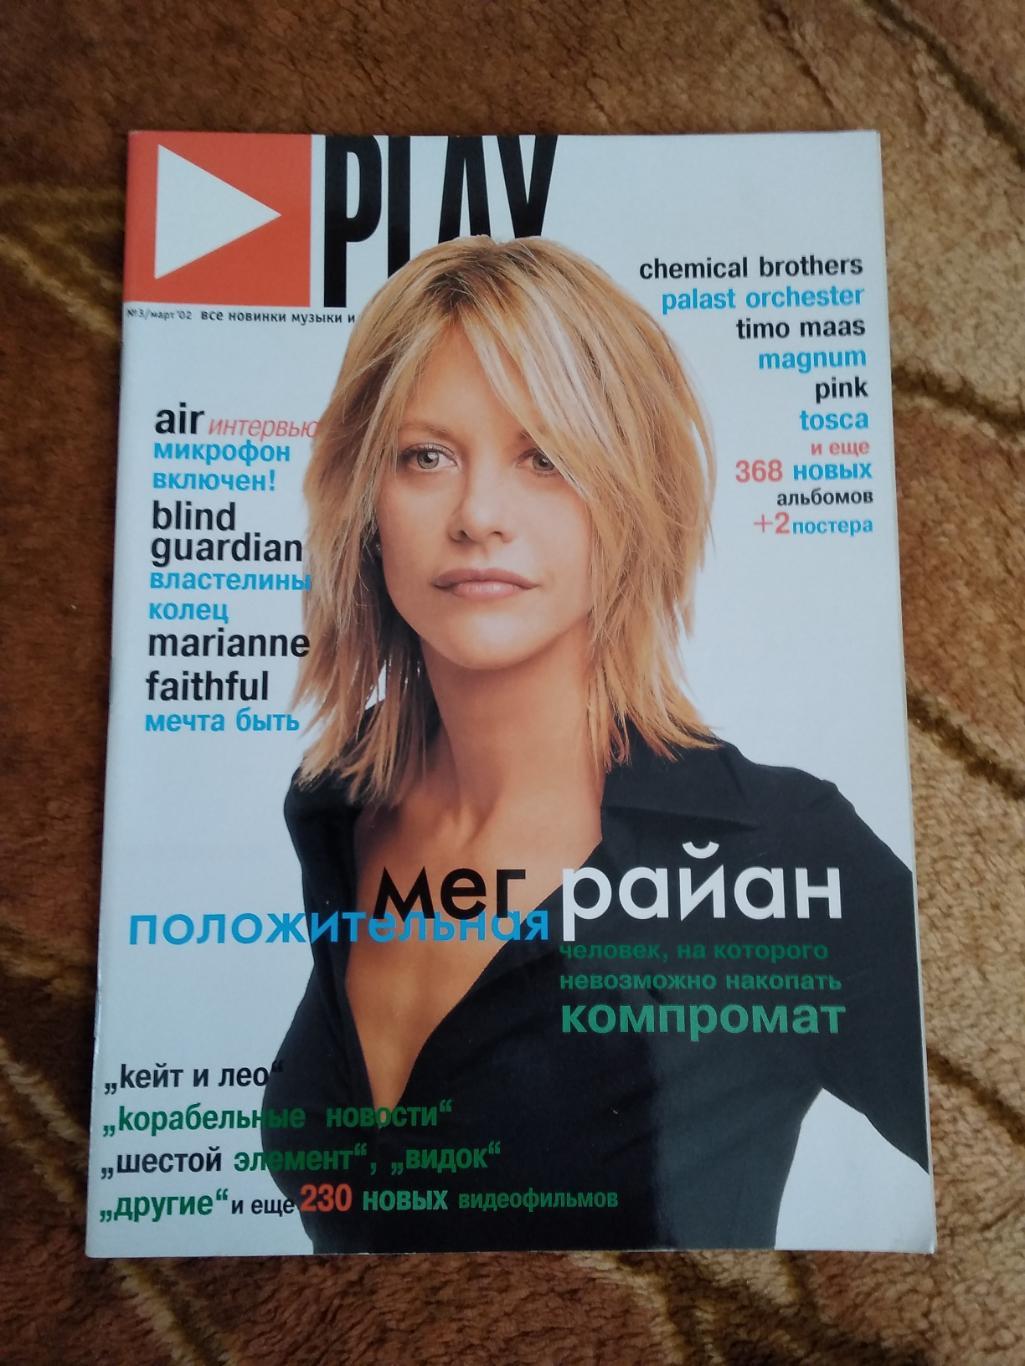 Журнал.Плэй/Play. № 3 2002 г.